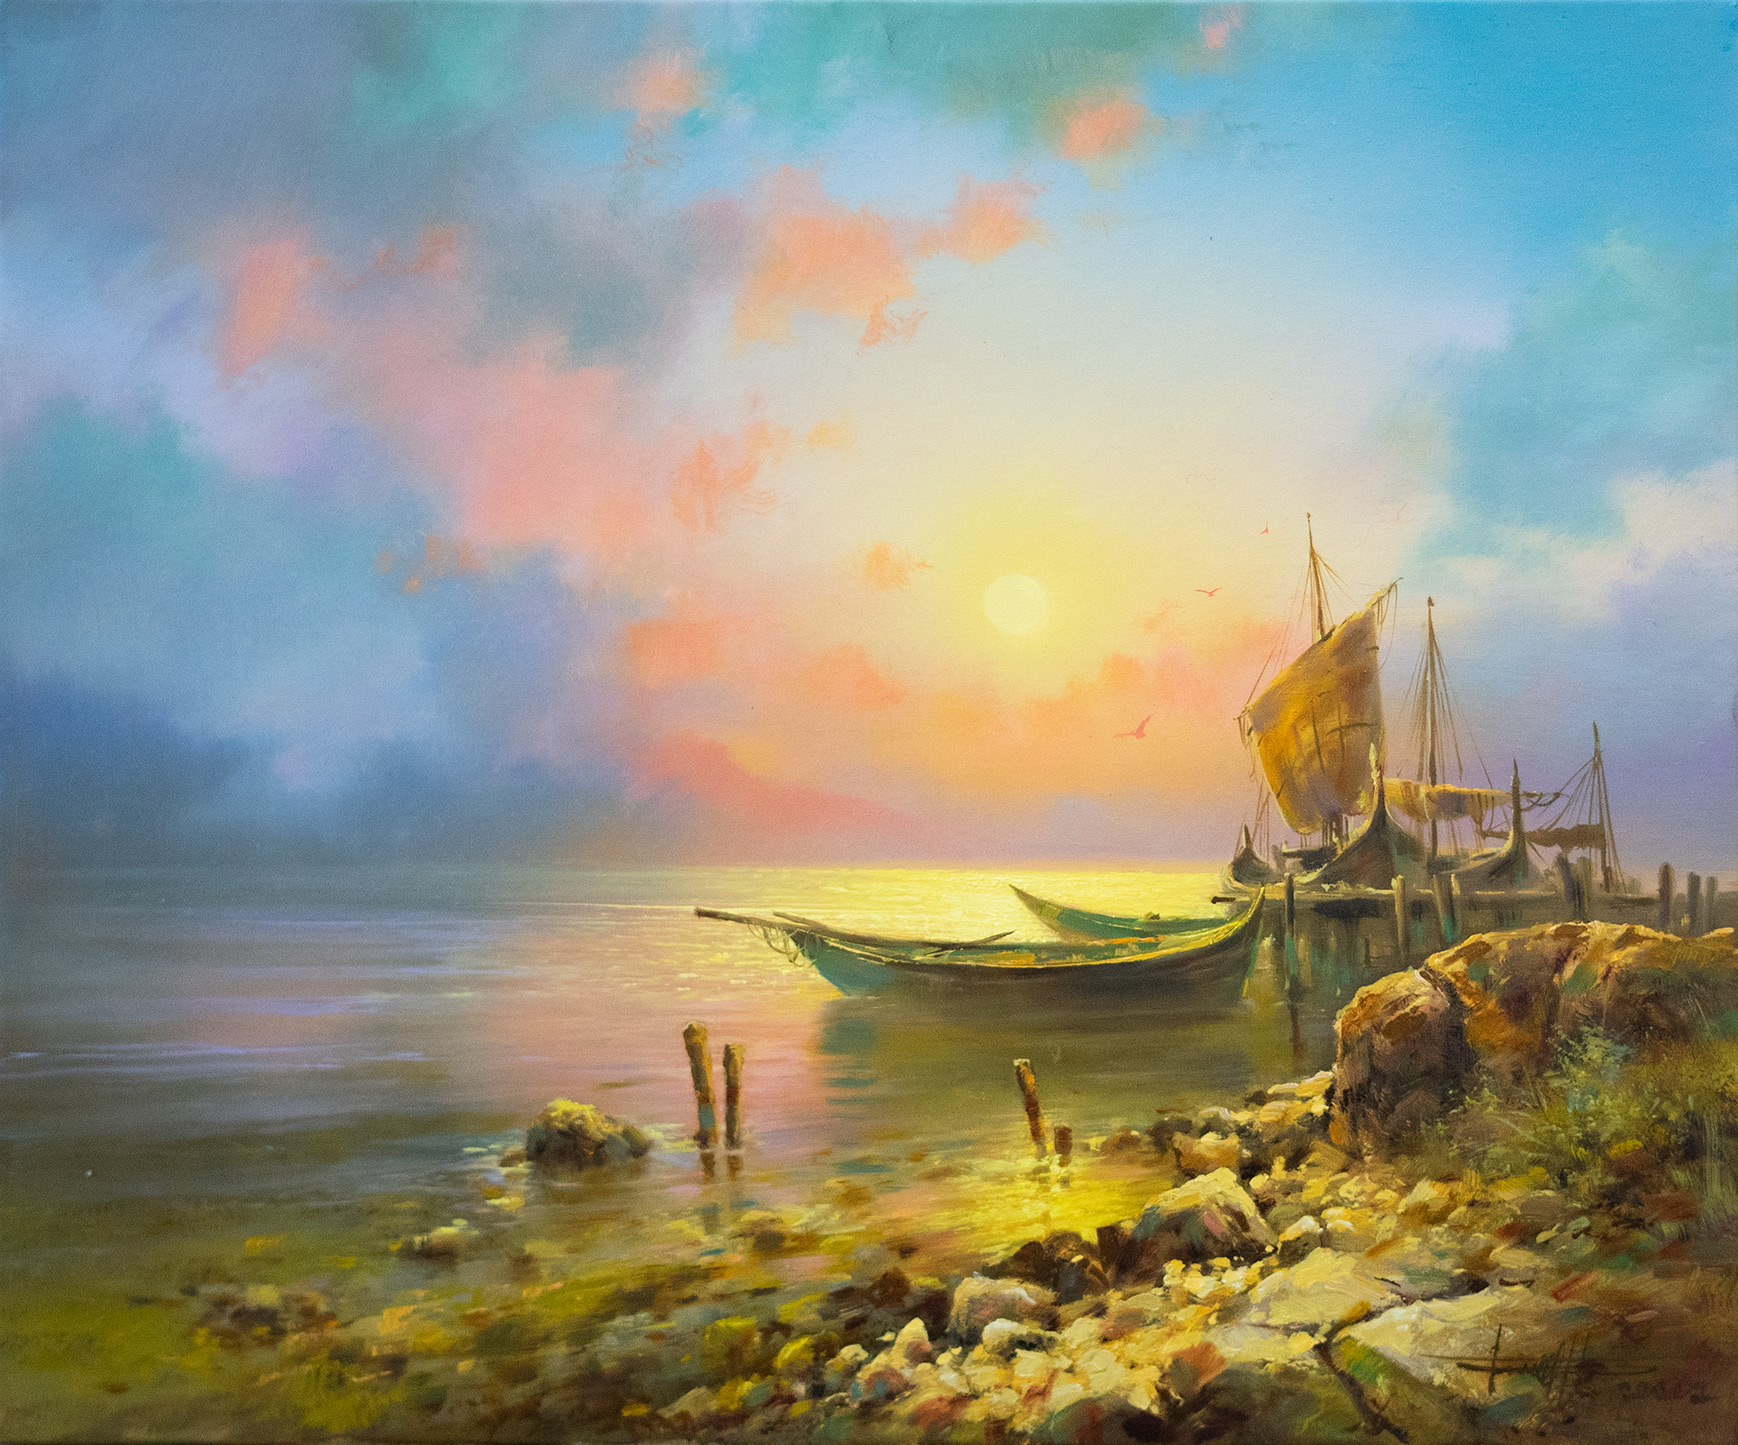 On The Shore - 1, Dmitry Balakhonov, Buy the painting Oil